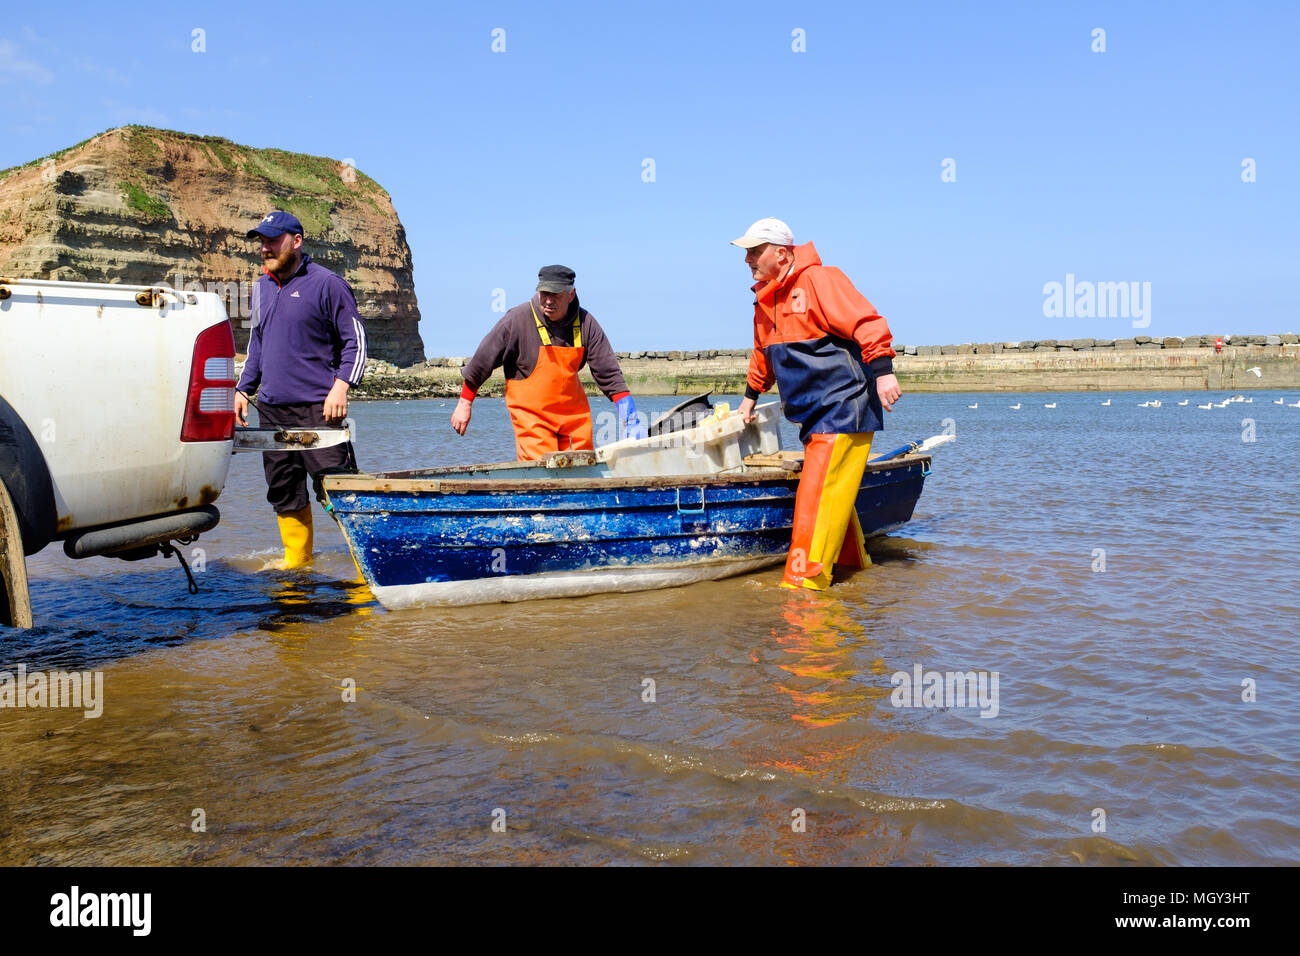 STAITHES, ANGLETERRE - 21 avril : les pêcheurs de Staithes déchargement attraper les homards fraîchement pêchés. Dans la région de Staithes, Angleterre. Le 21 avril 2018. Banque D'Images